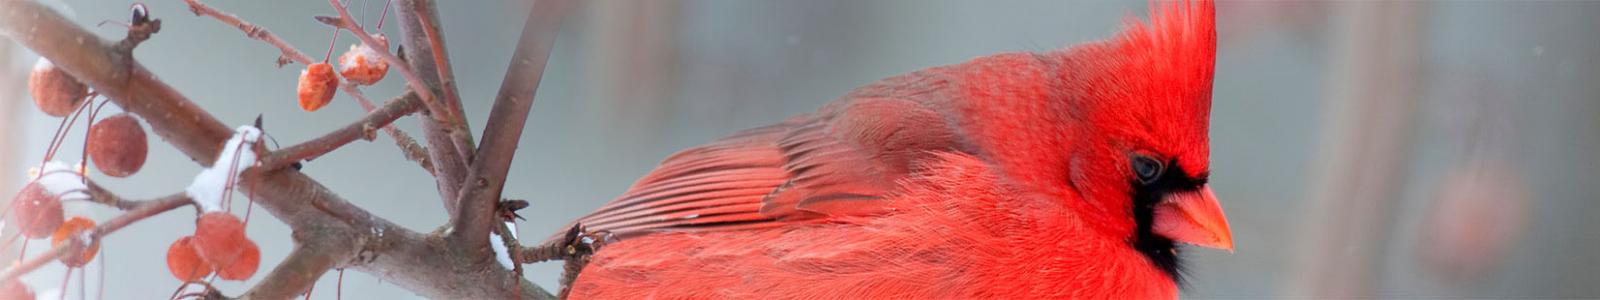 Redbird on branch